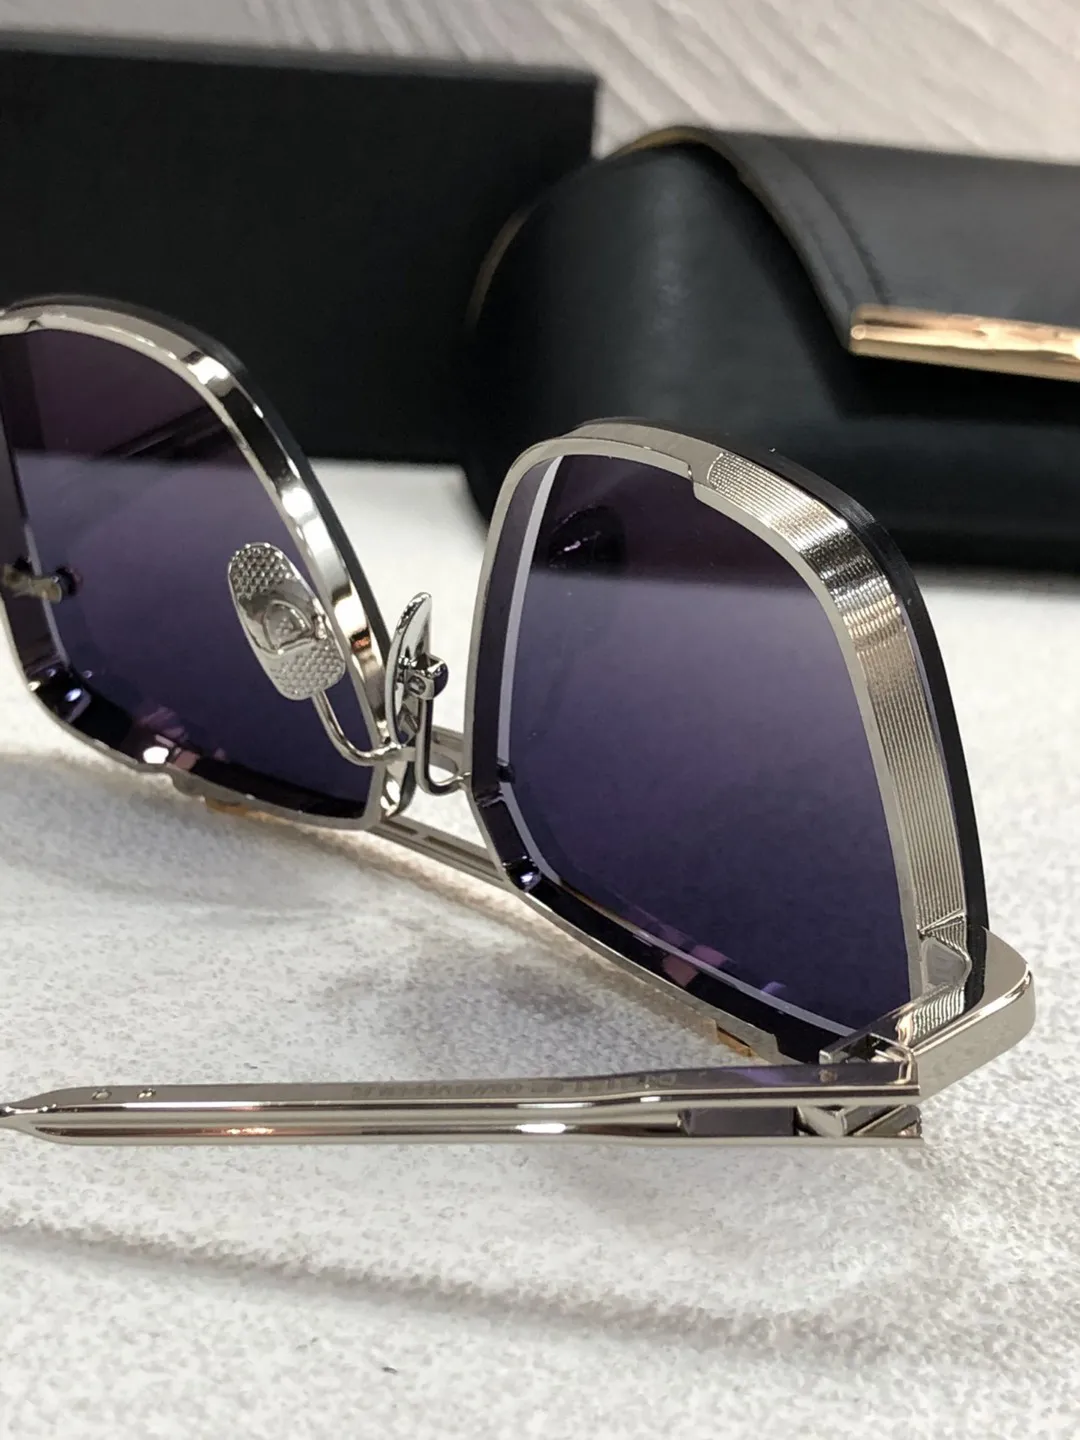 A Dita Mach Six DTS121 Lunettes de soleil pour femmes et lunettes pour hommes Top de qualité originale Designer Classic Retro Sun Glasses Brand Fashio279m